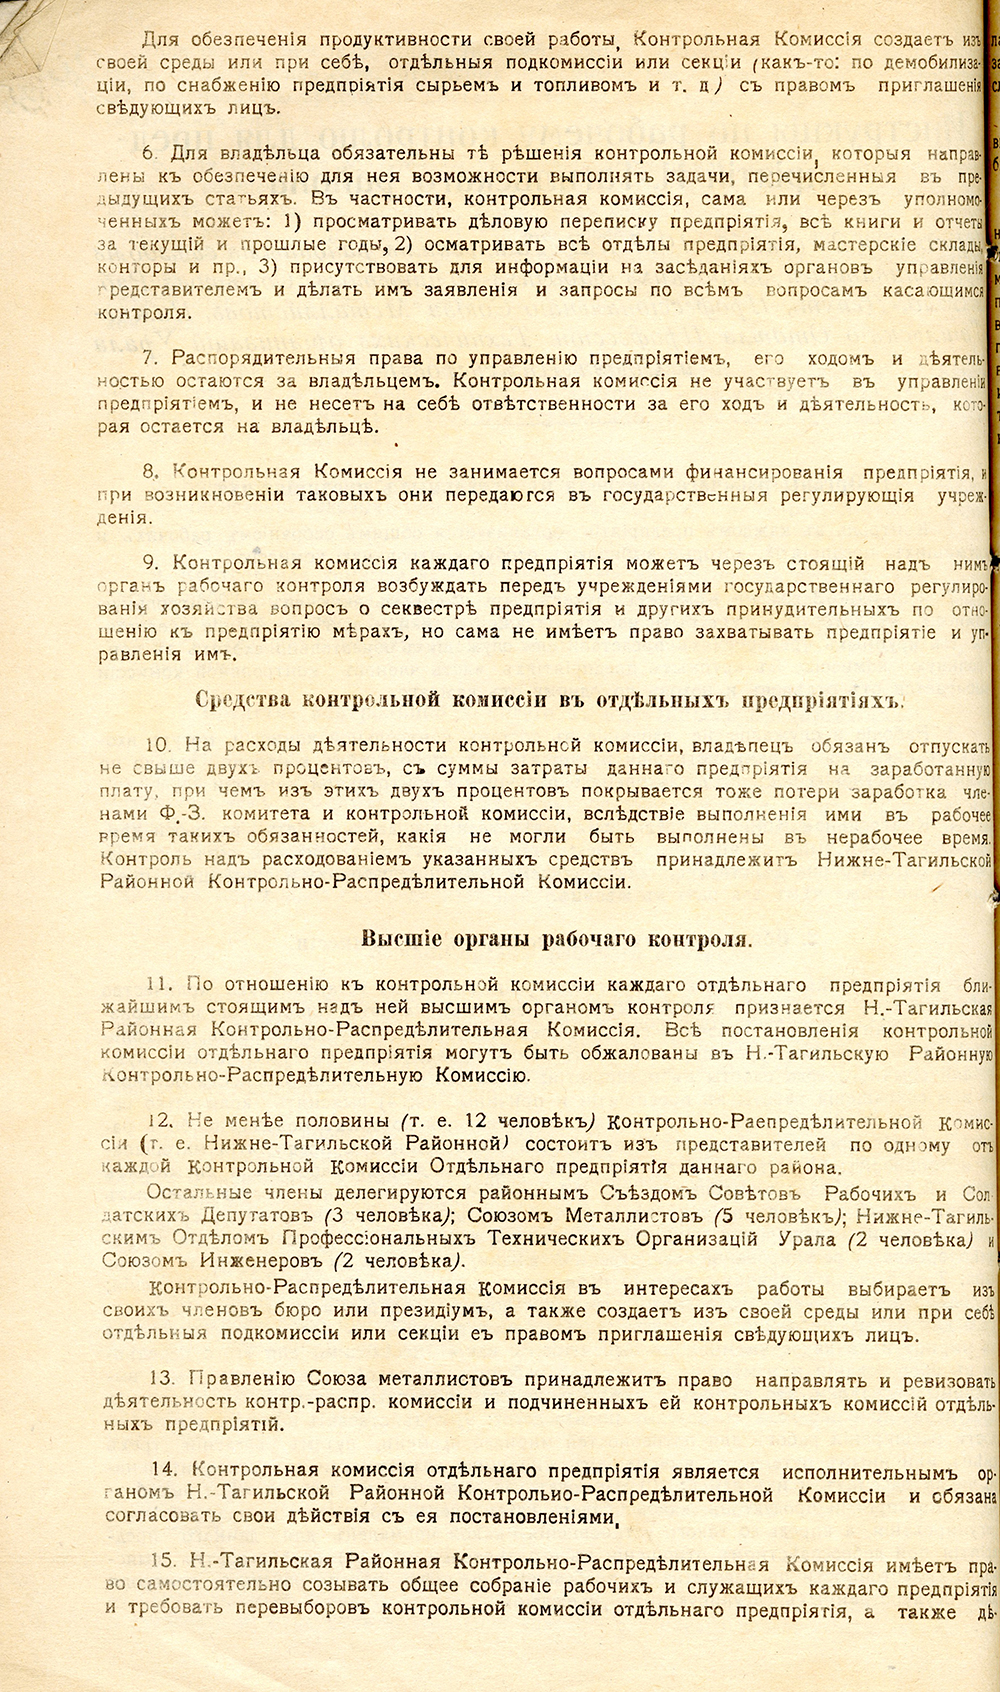 Инструкция по рабочему контролю для предприятий Н-Тагильского района, 1918 год. (НТГИА. Ф.125.Оп.1.Д.9.Л.35об)